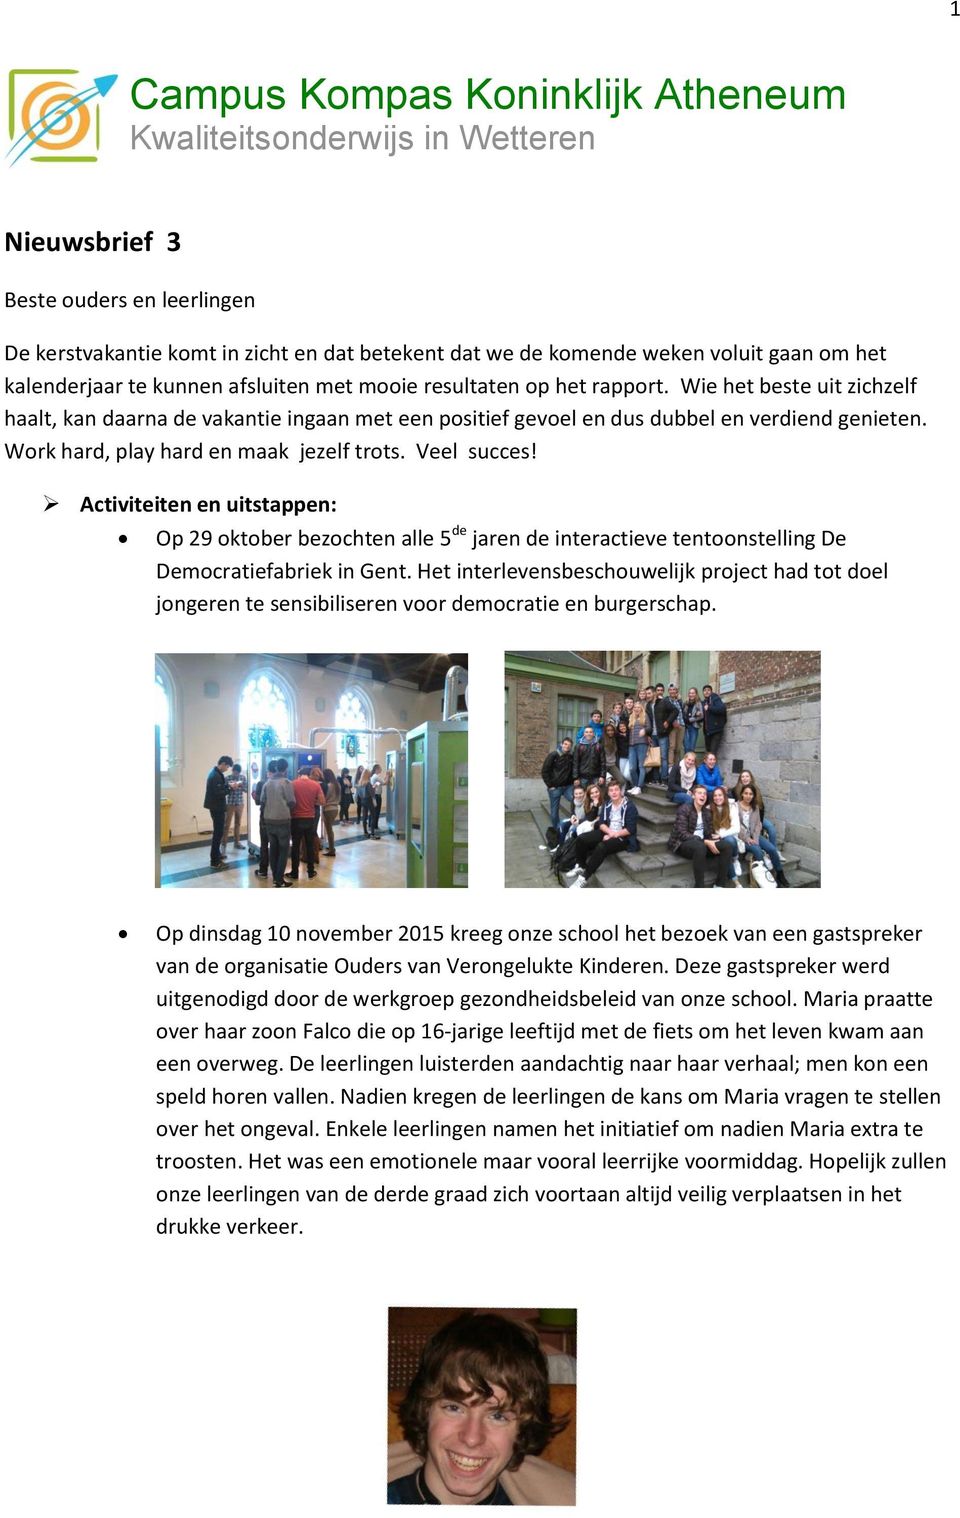 Work hard, play hard en maak jezelf trots. Veel succes! Activiteiten en uitstappen: Op 29 oktober bezochten alle 5 de jaren de interactieve tentoonstelling De Democratiefabriek in Gent.